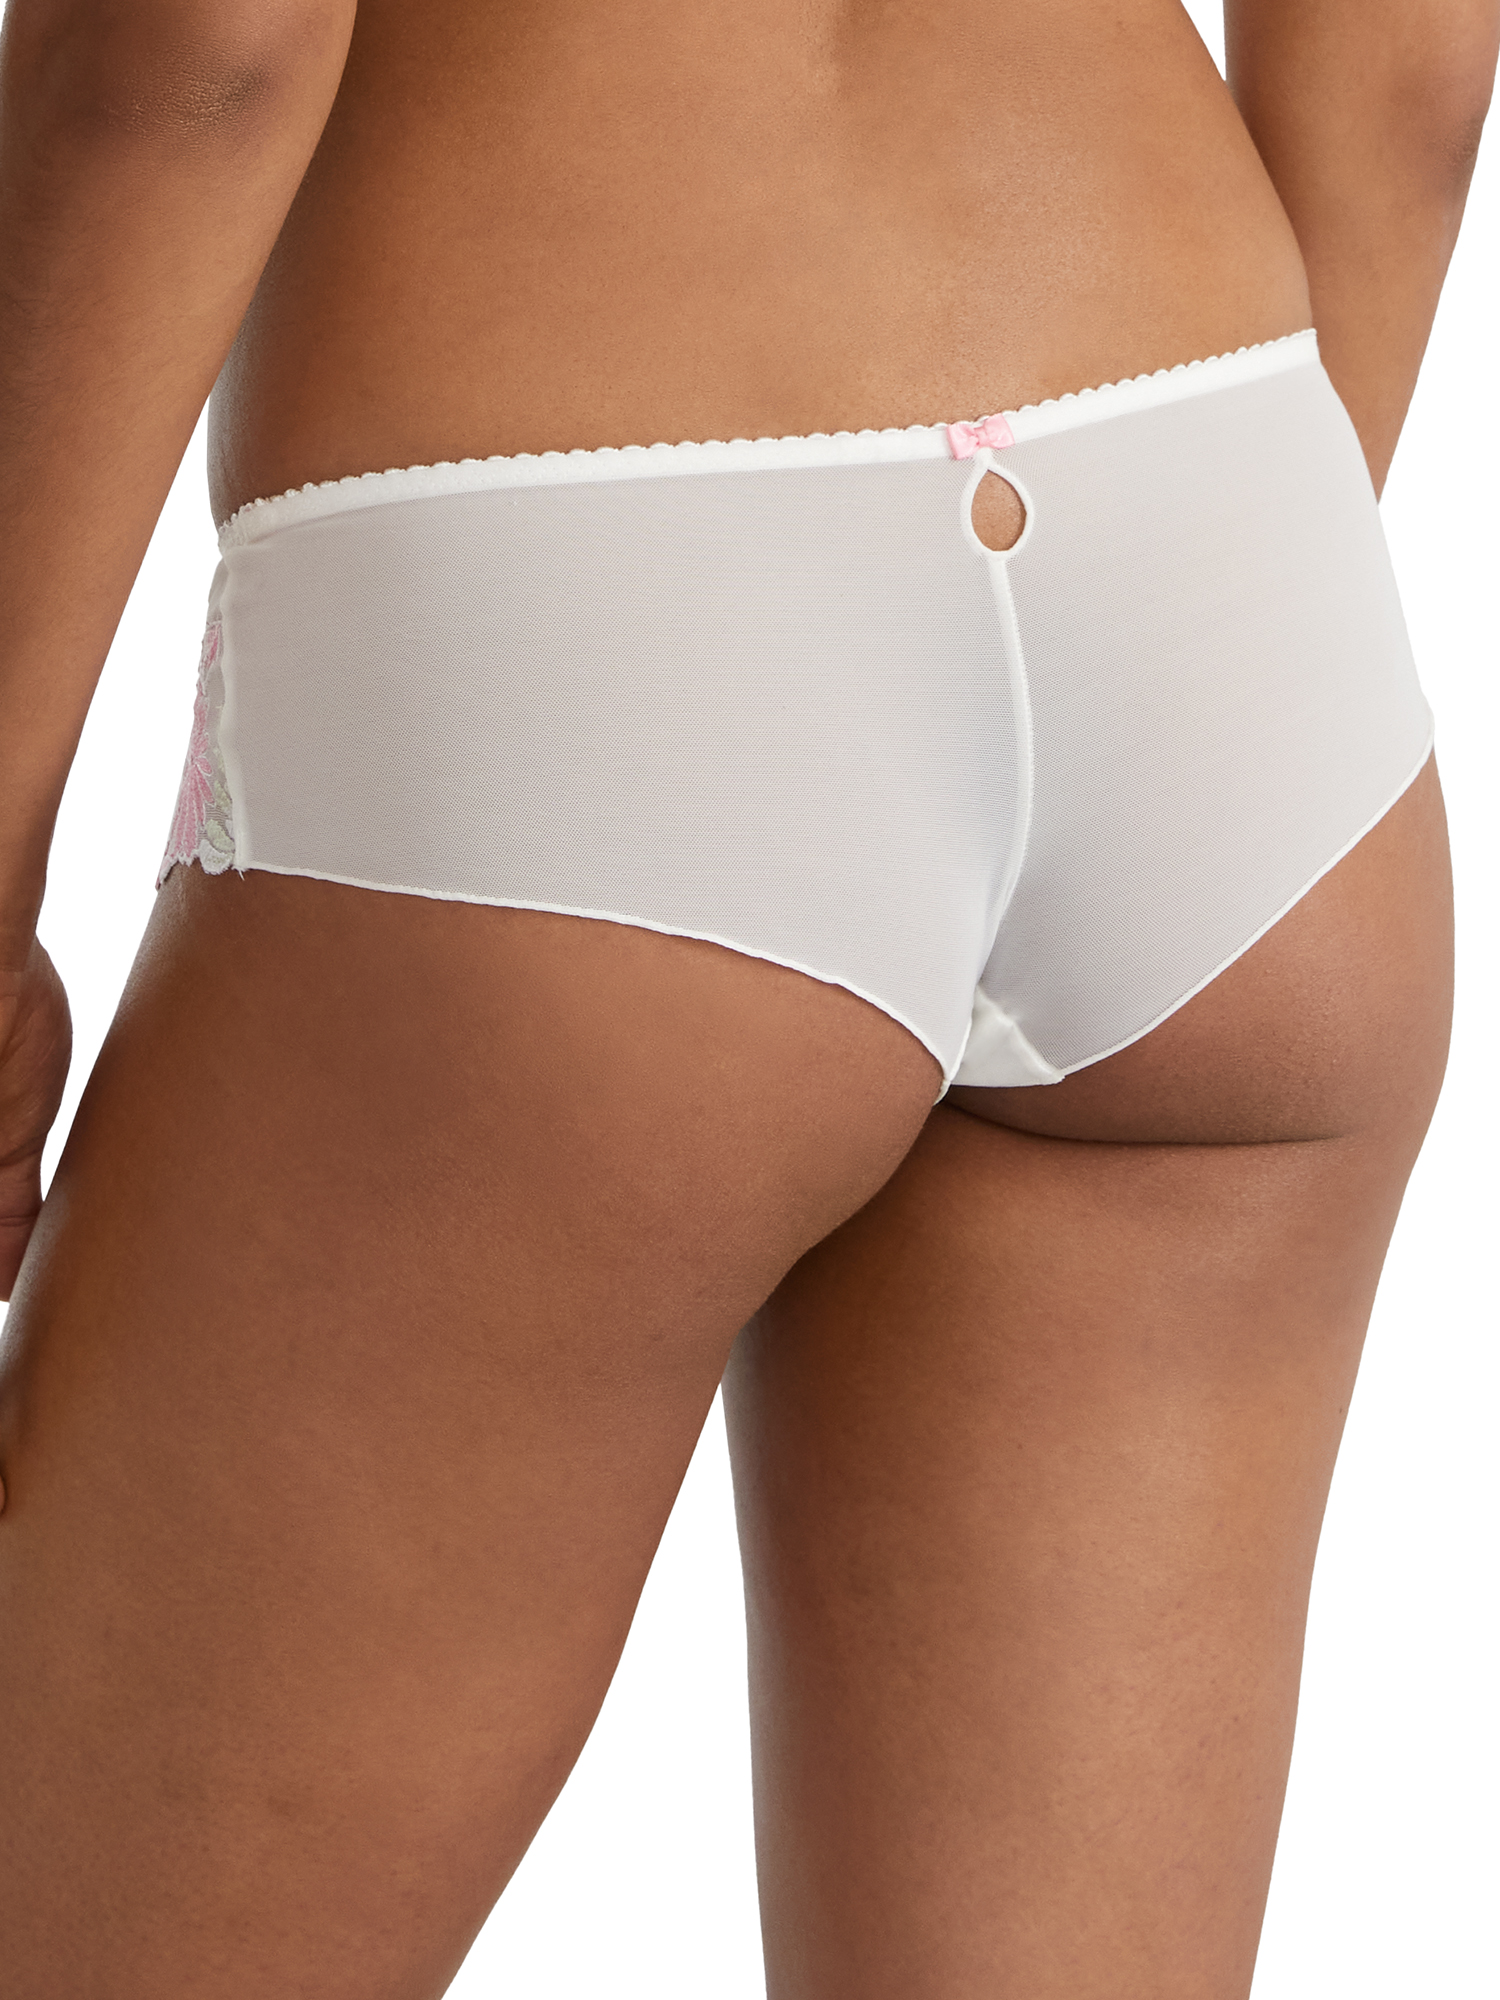 Women's Pour Moi 7703 St. Tropez Shorty Panty (White/Pink/Green XL) - image 2 of 2